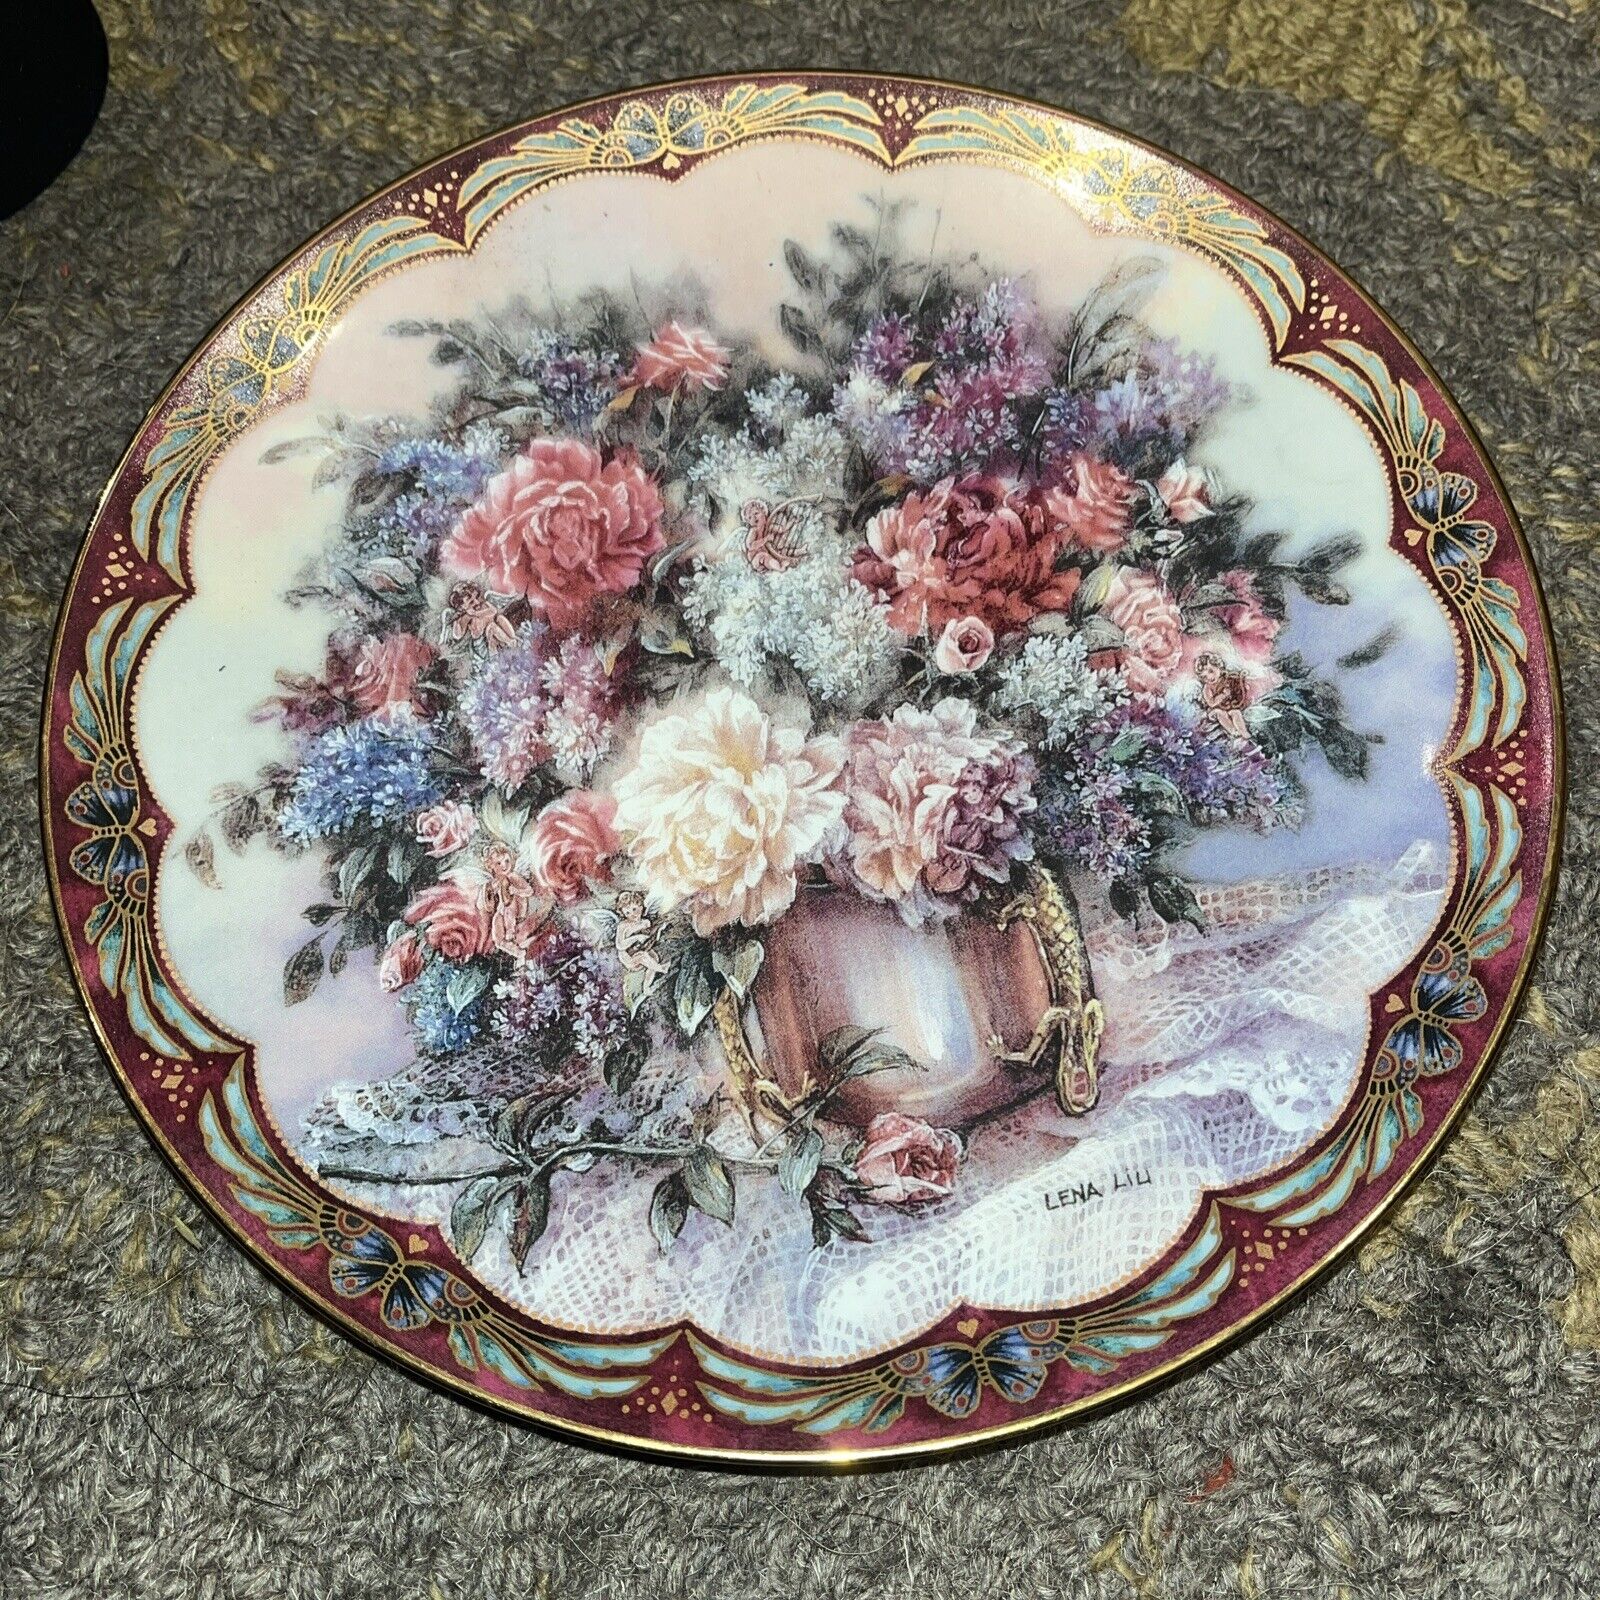 Lena Liu Magic Makers Plate #1 Flower Fairies Series Plate 4586 A